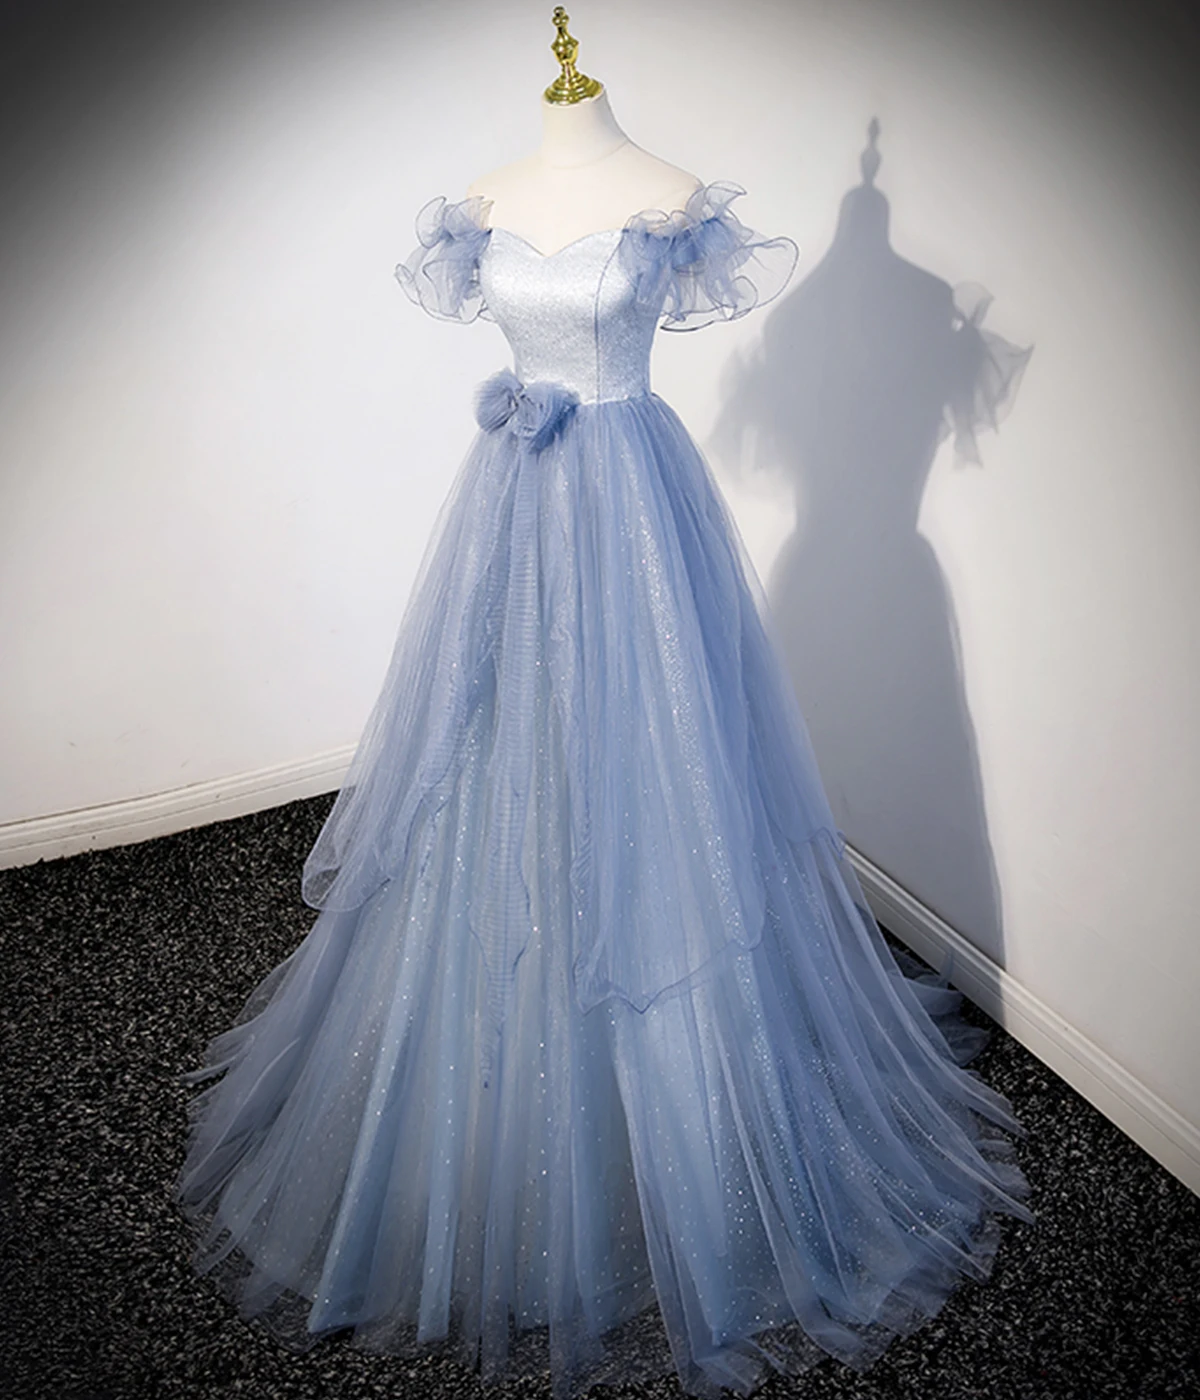 17104#IENA Hada Azul Vestido de fiesta de Lentejuelas Hinchada Manga de Lujo Imperio Una Línea de Piso-Longitud de Encaje por Parte del Banquete Formal de los Vestidos de la educación a distancia . ' - ' . 1